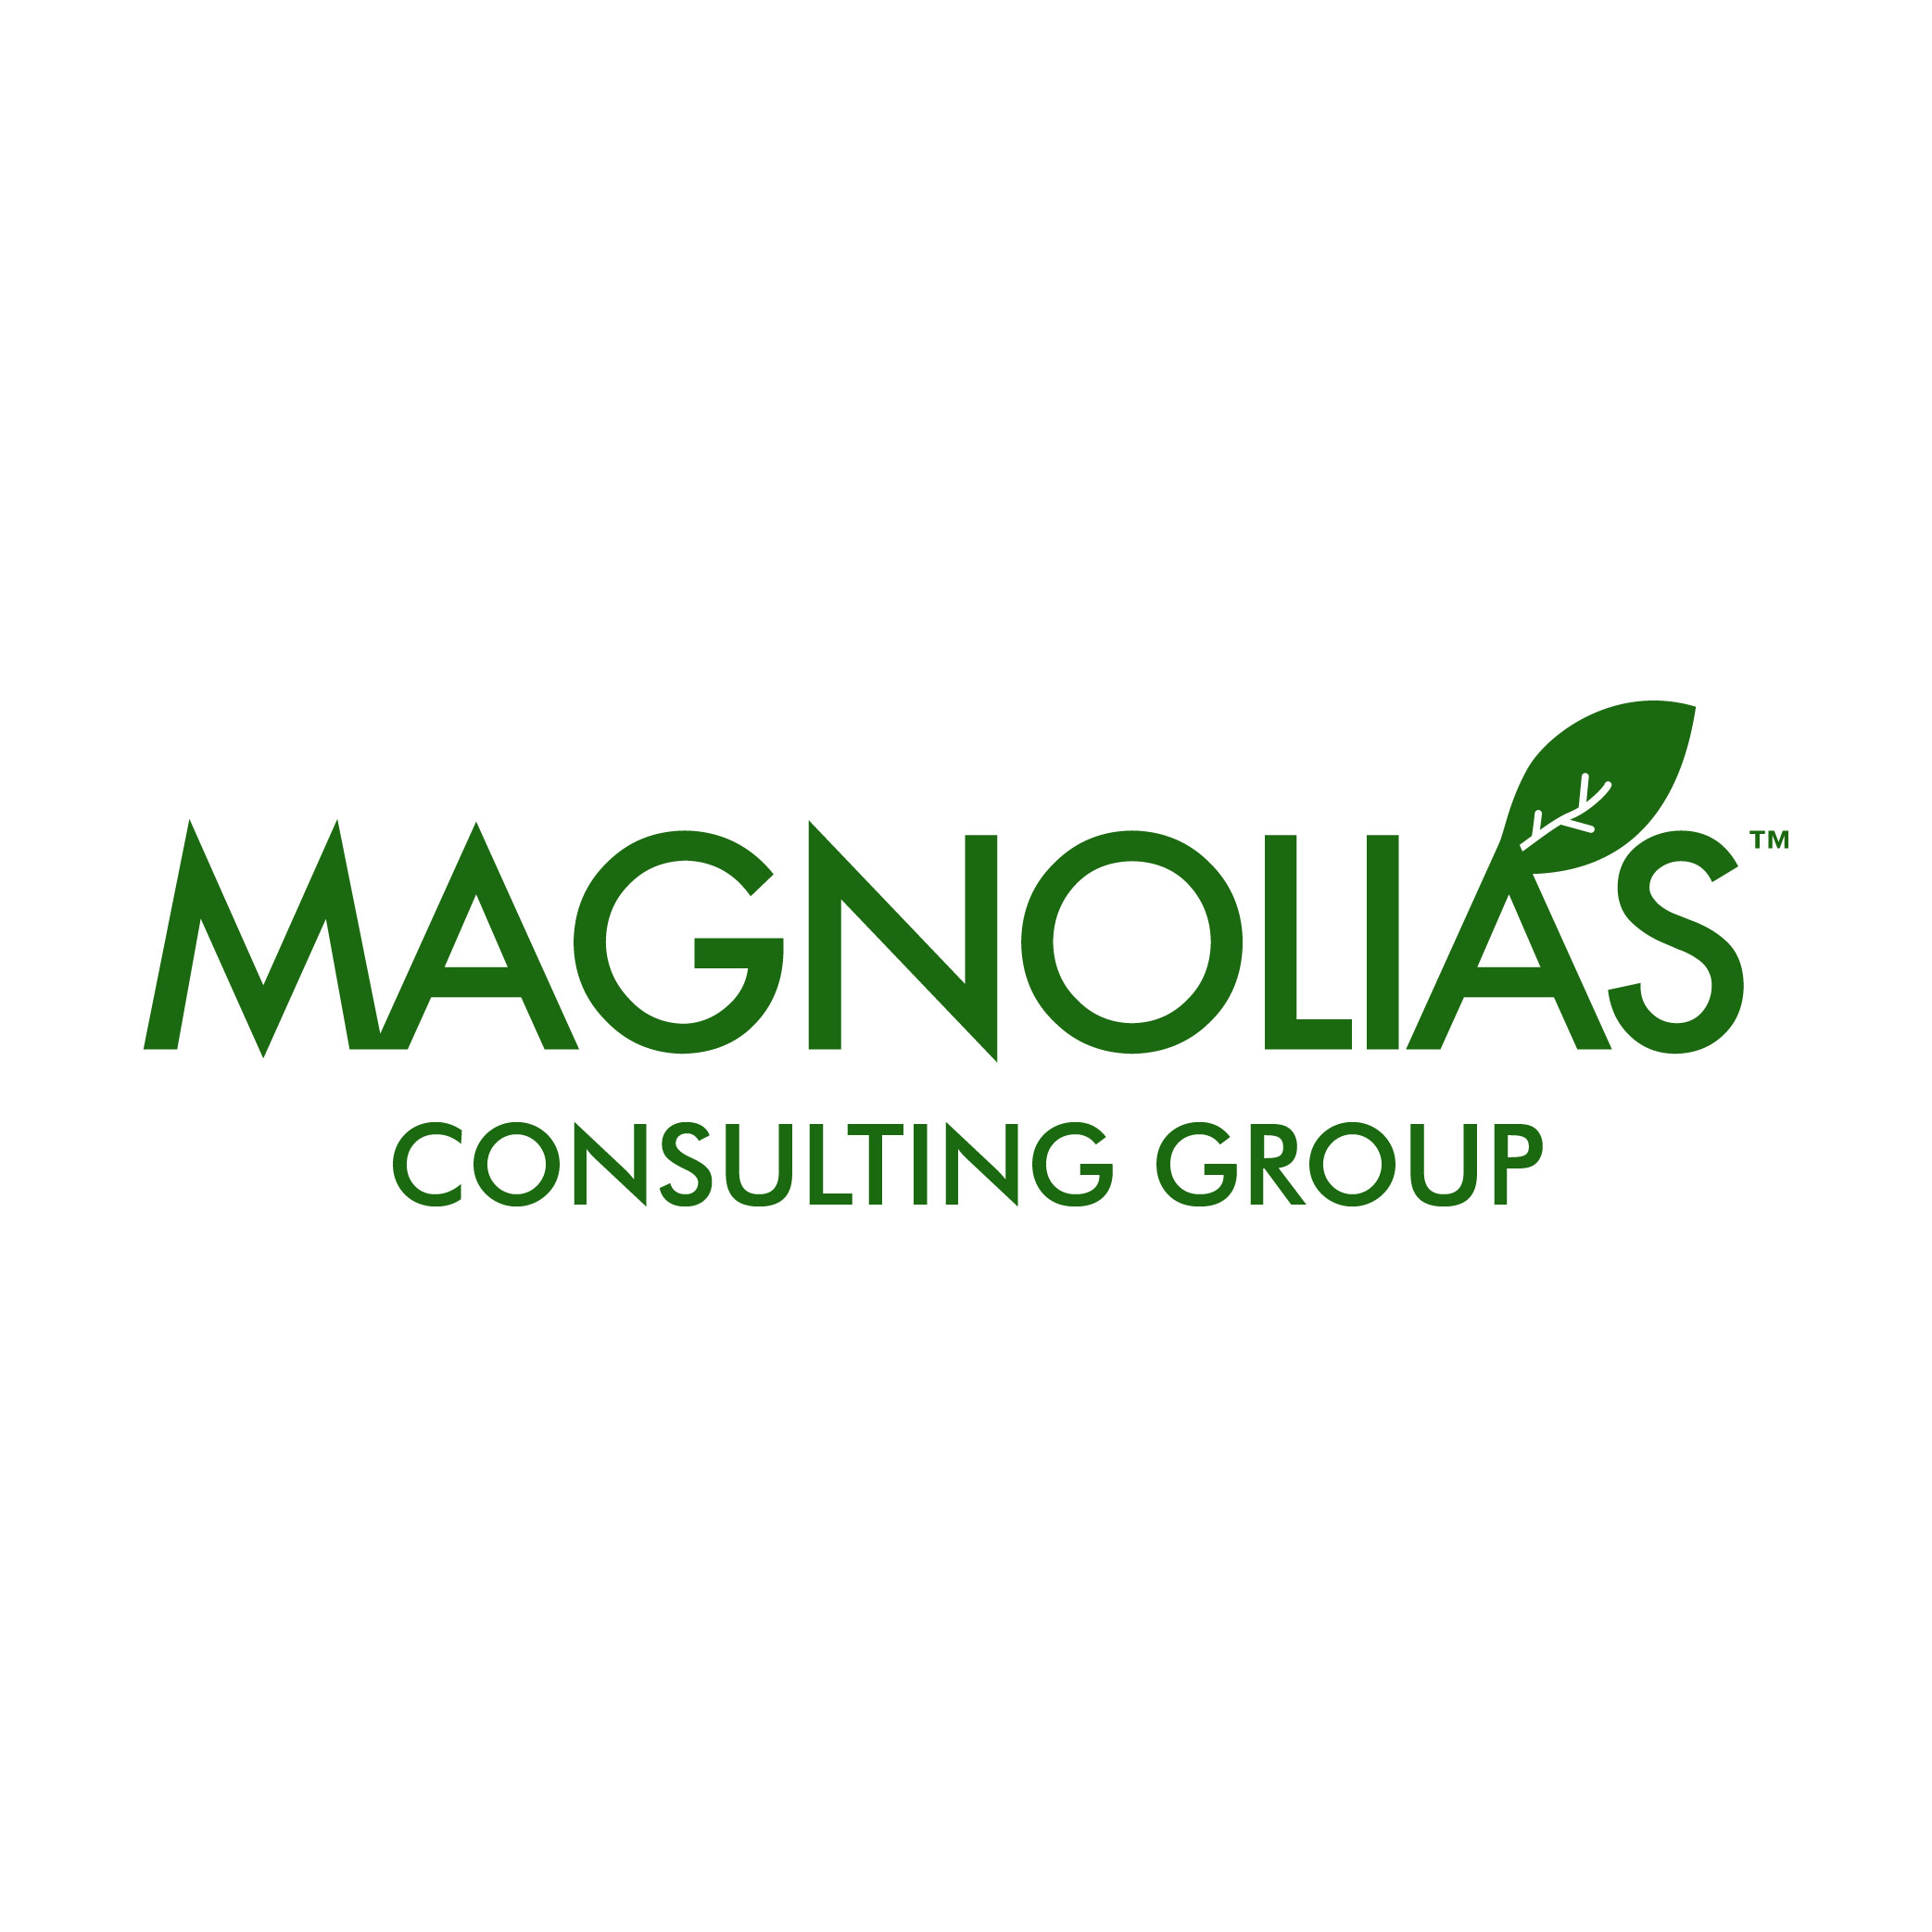 Magnolias Consulting